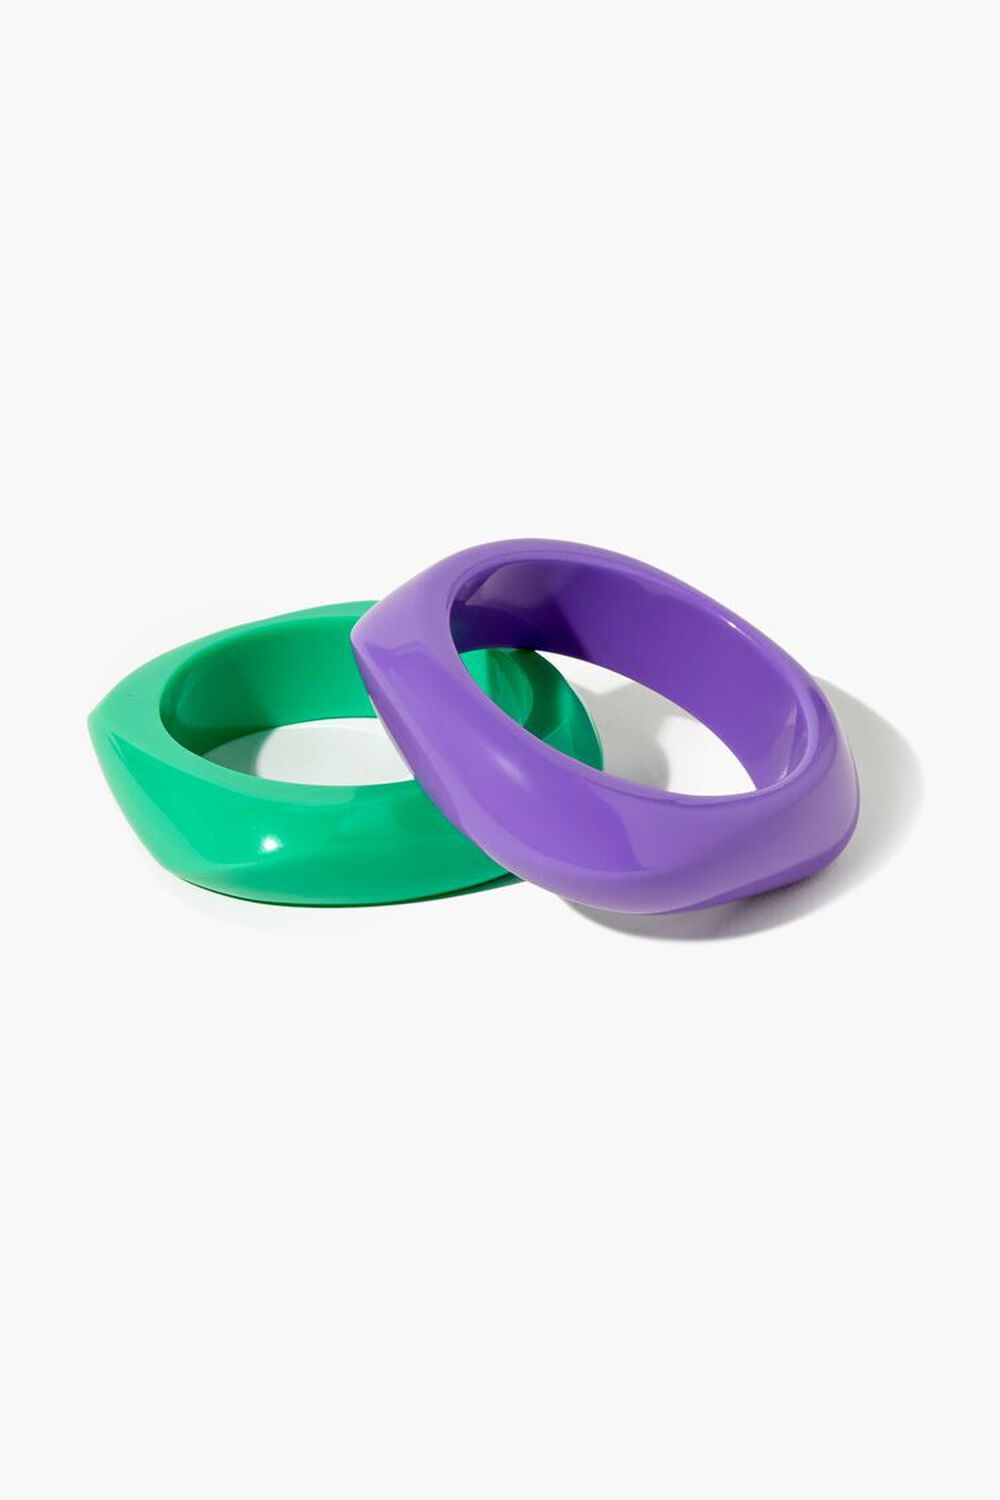 GREEN/PURPLE Square Bangle Bracelet Set, image 1